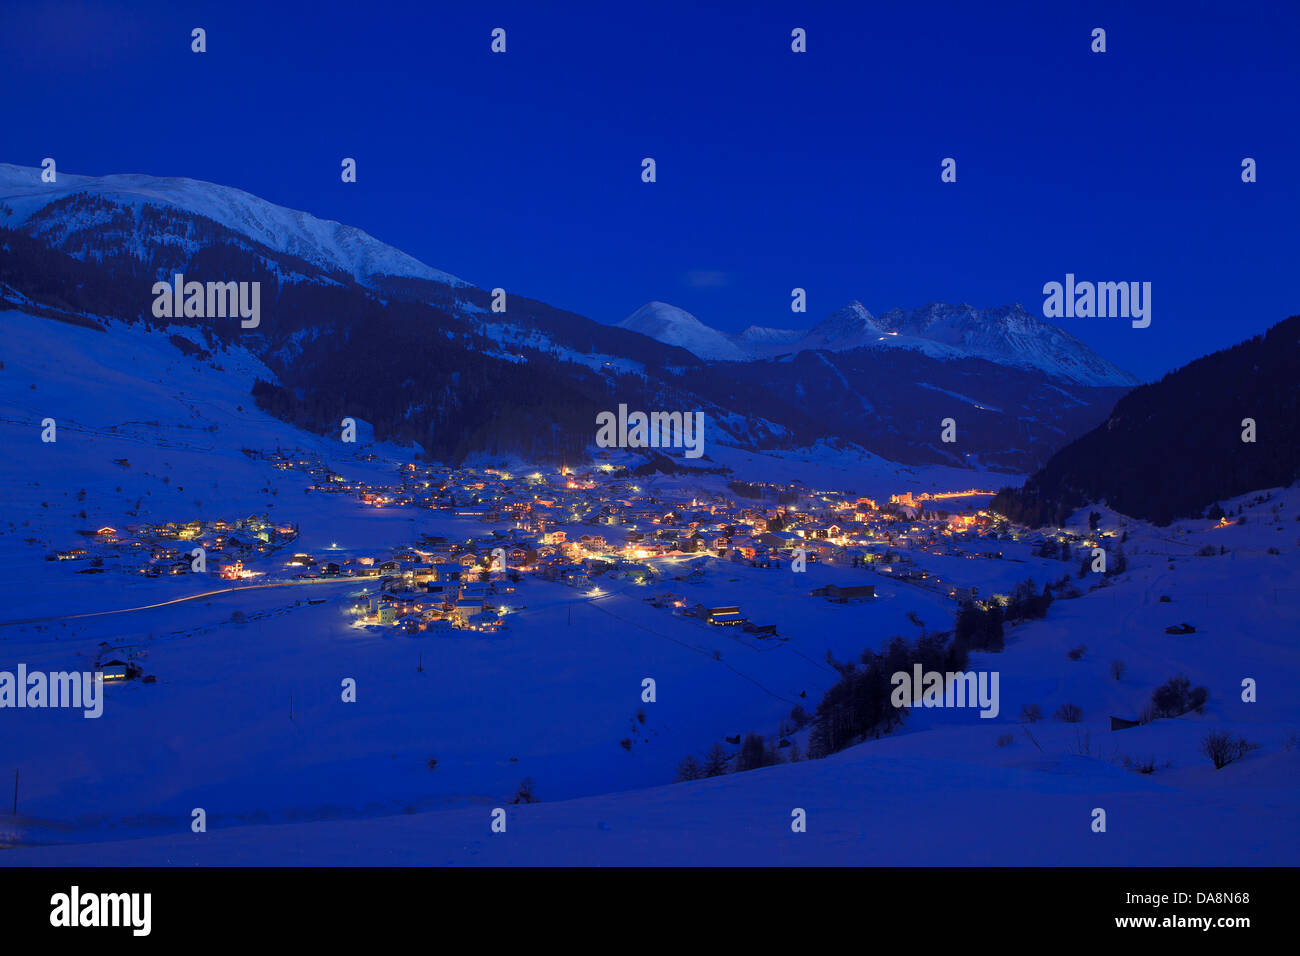 Austria, Europe, Tyrol, uplands, Oberinntal, Oberes Gericht, Nauders, Reschenpass, border, winter, evening, winter evening, nigh Stock Photo